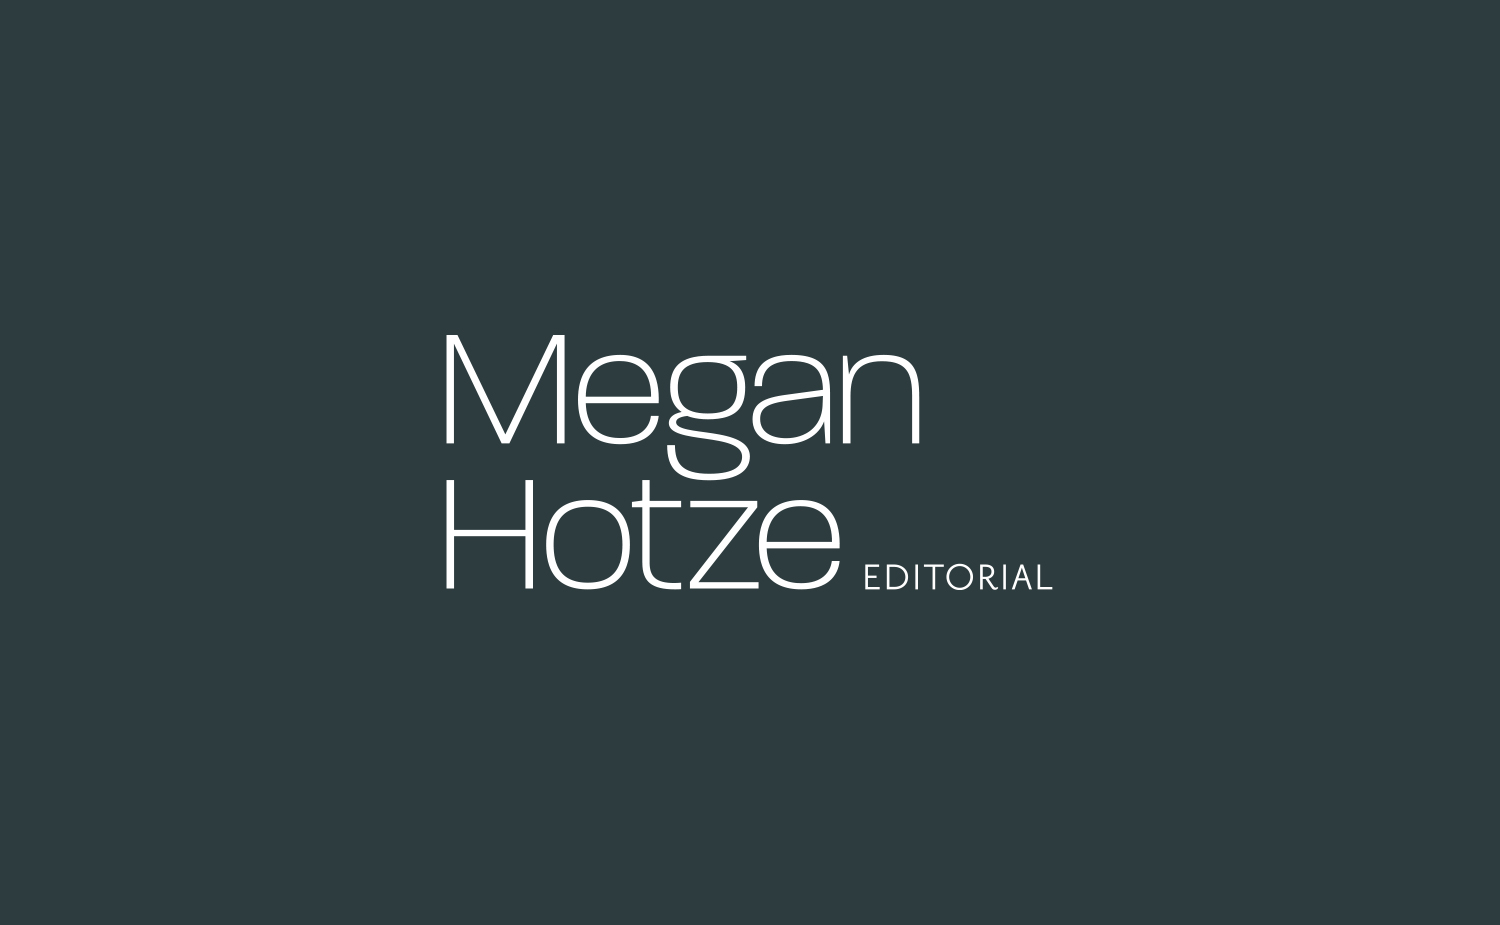 Megan Hotze Editorial - Neiter Creative